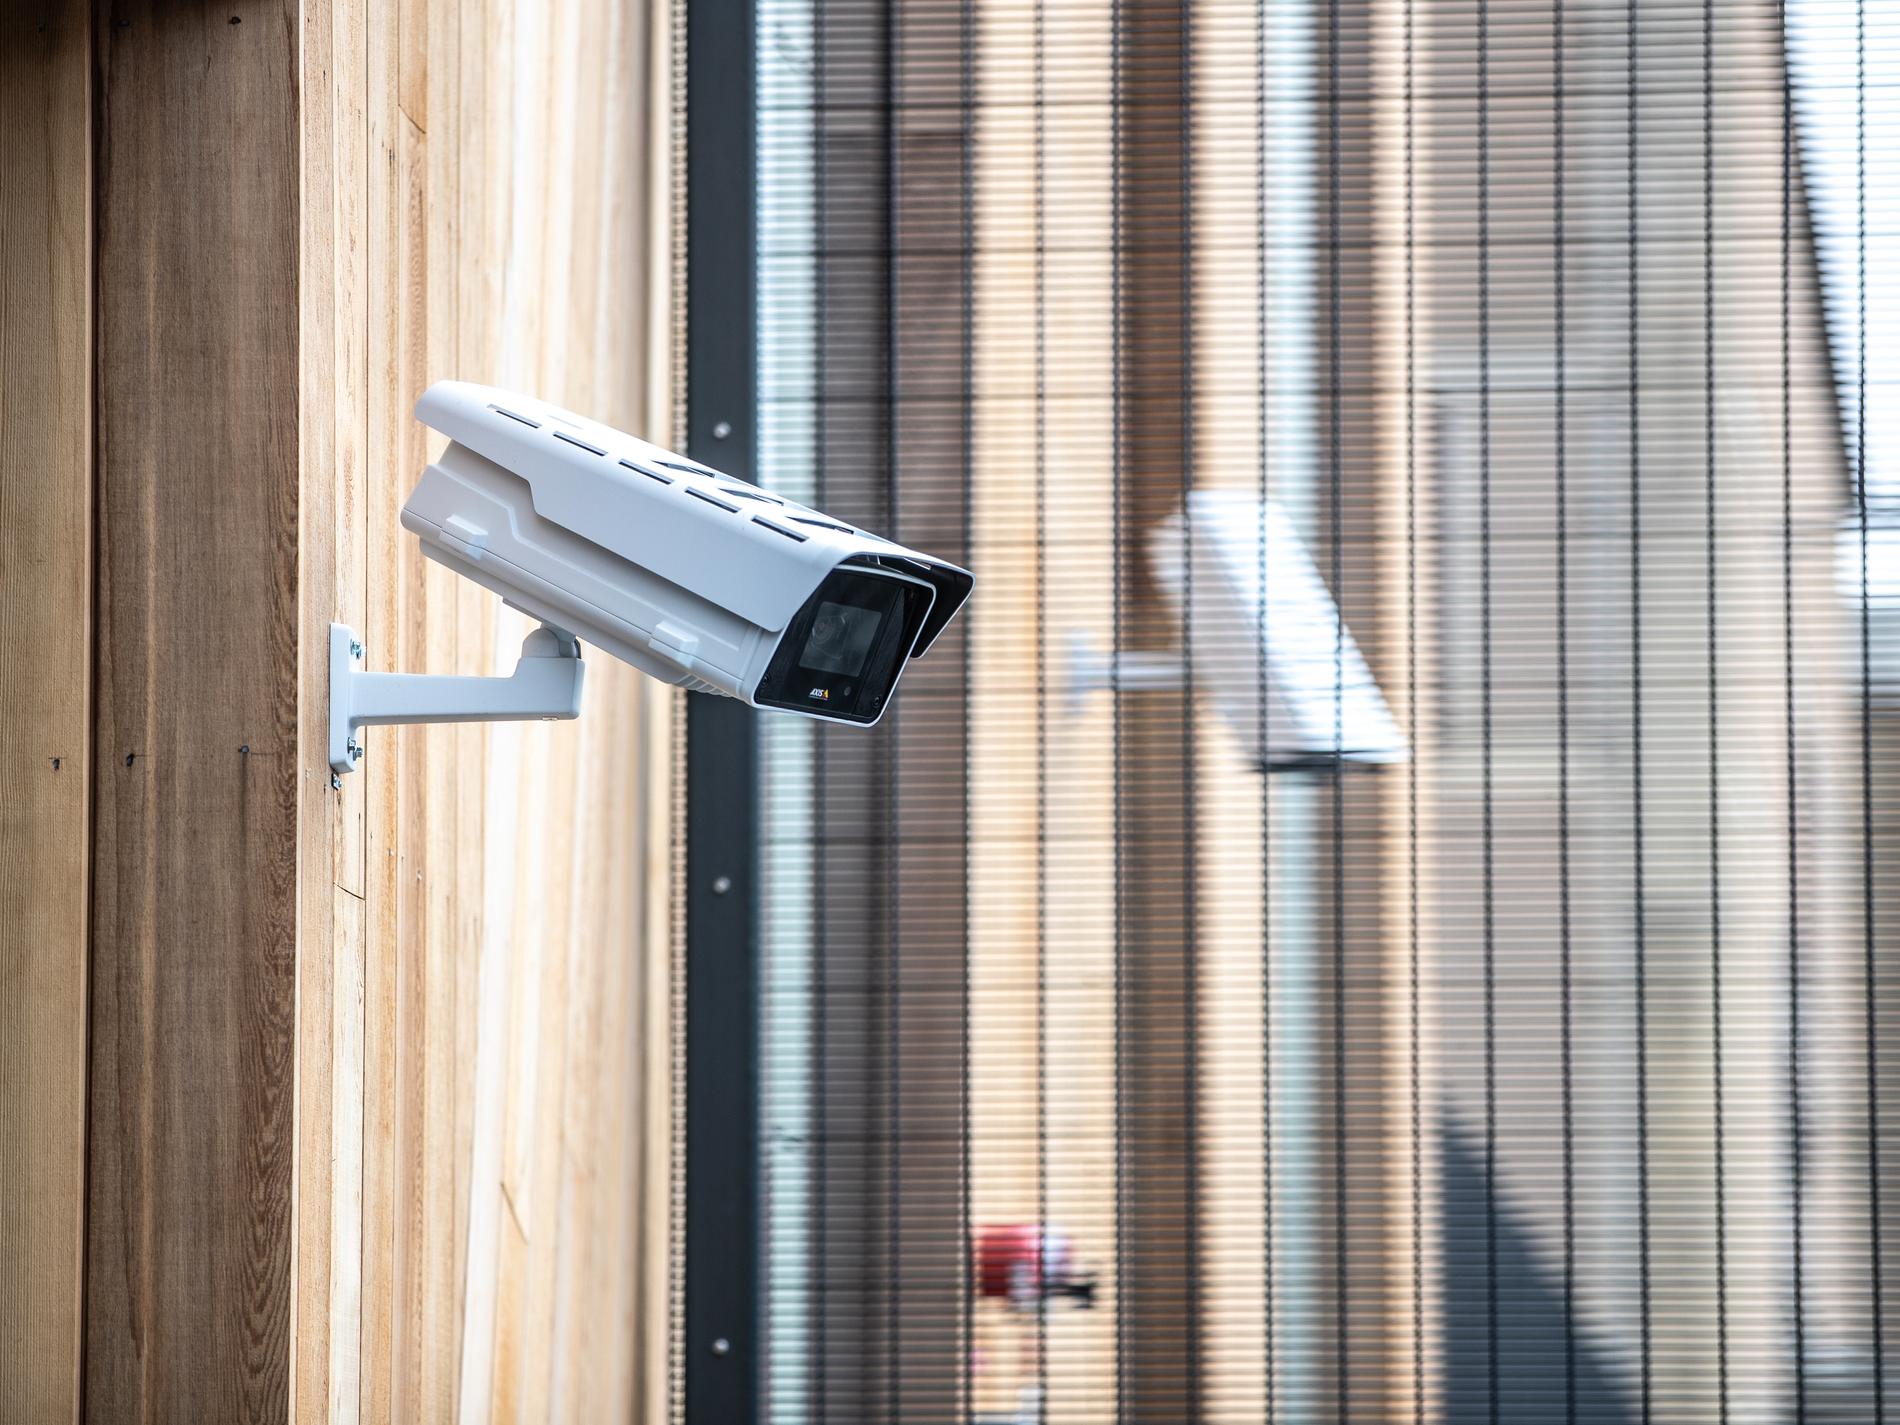 Forskare ska hjälpa polis med kameraövervakning